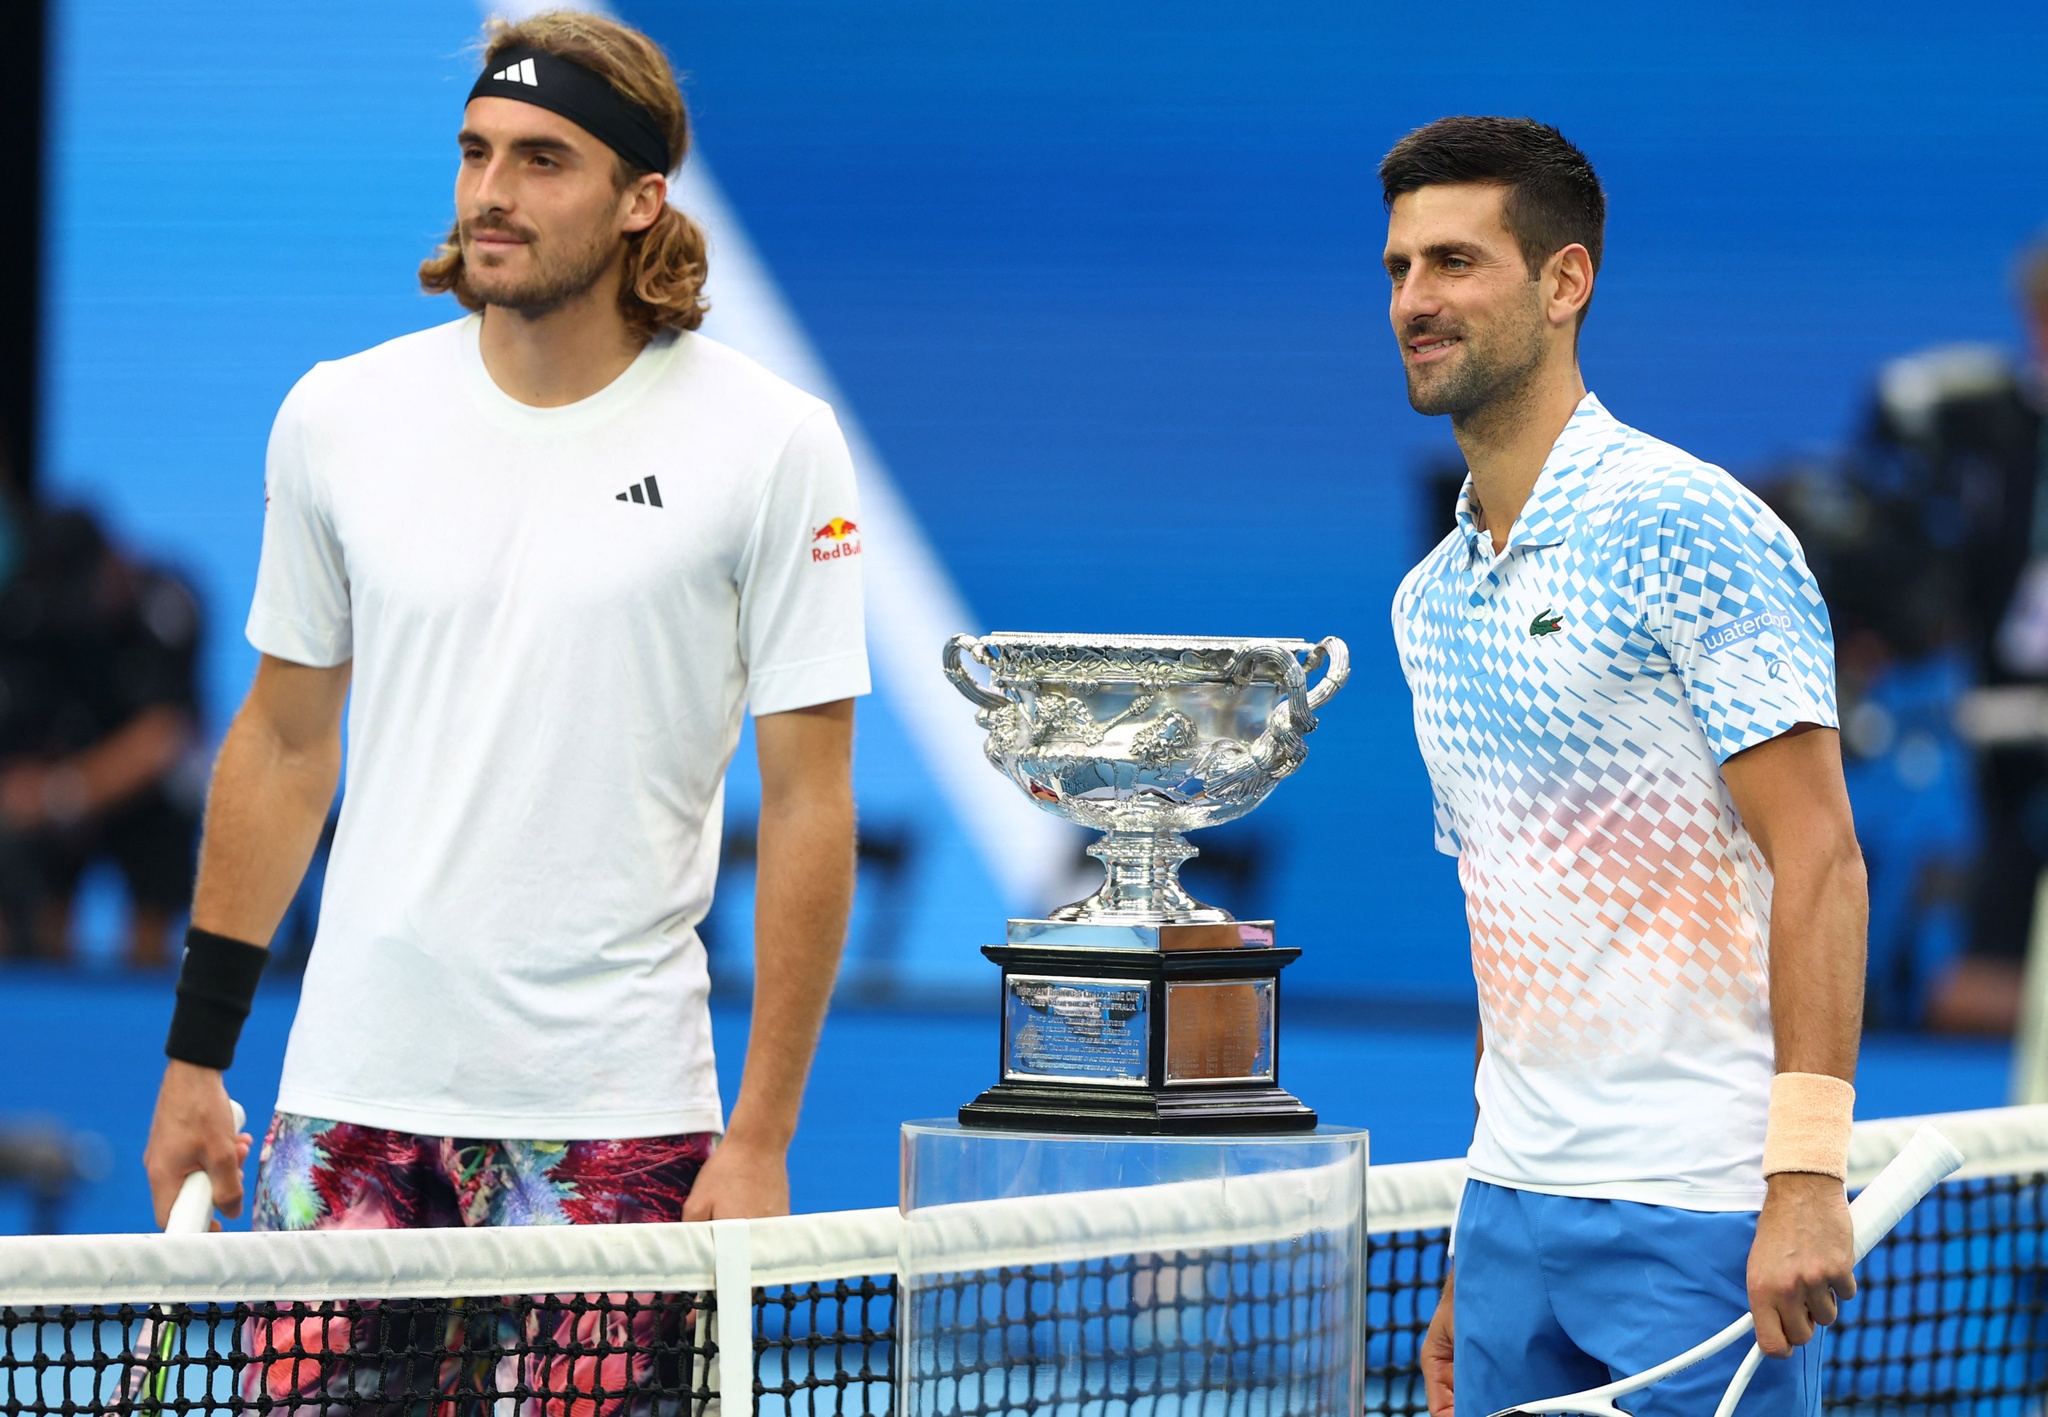 Vô địch giải Úc mở rộng, Djokovic cân bằng kỷ lục của làng quần vợt thế giới - ảnh 1